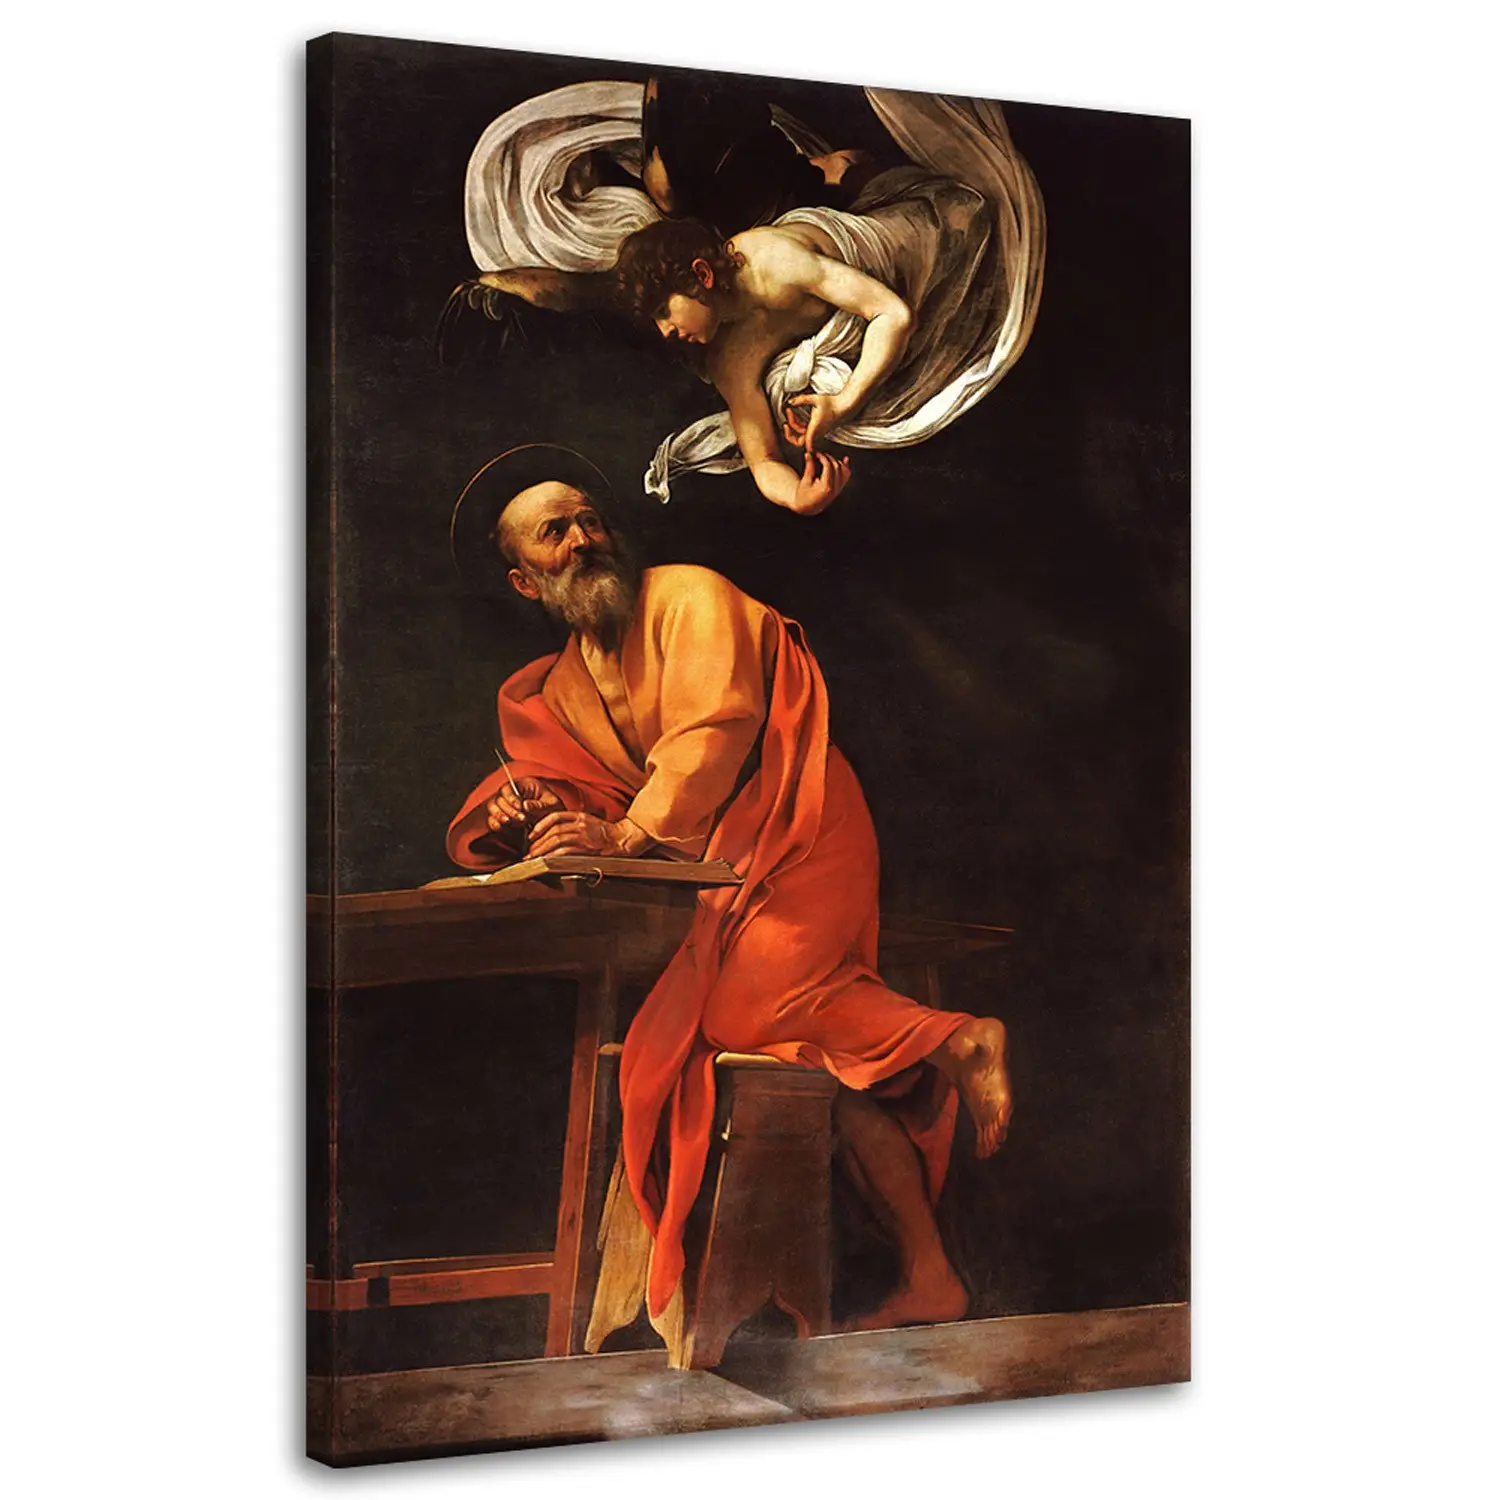 Bild Matth盲us und der Engel - Caravaggio